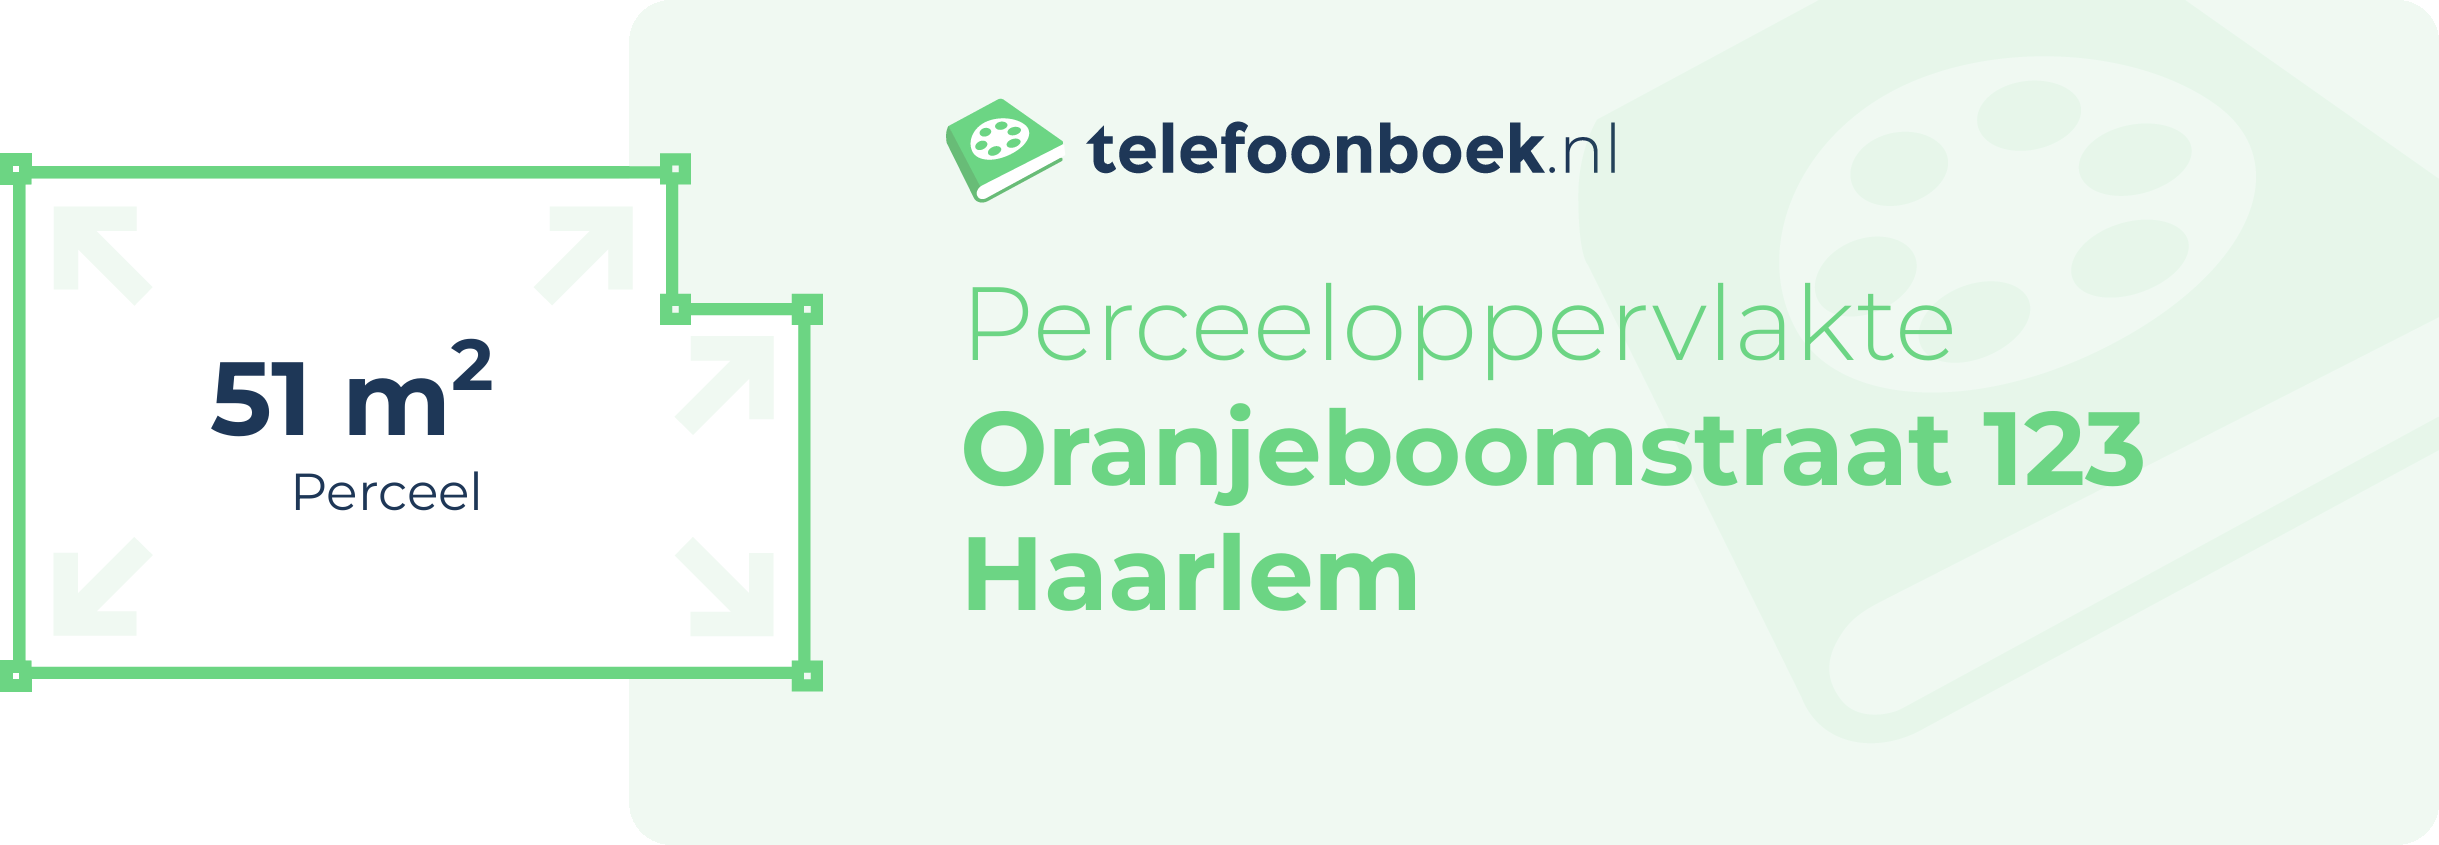 Perceeloppervlakte Oranjeboomstraat 123 Haarlem